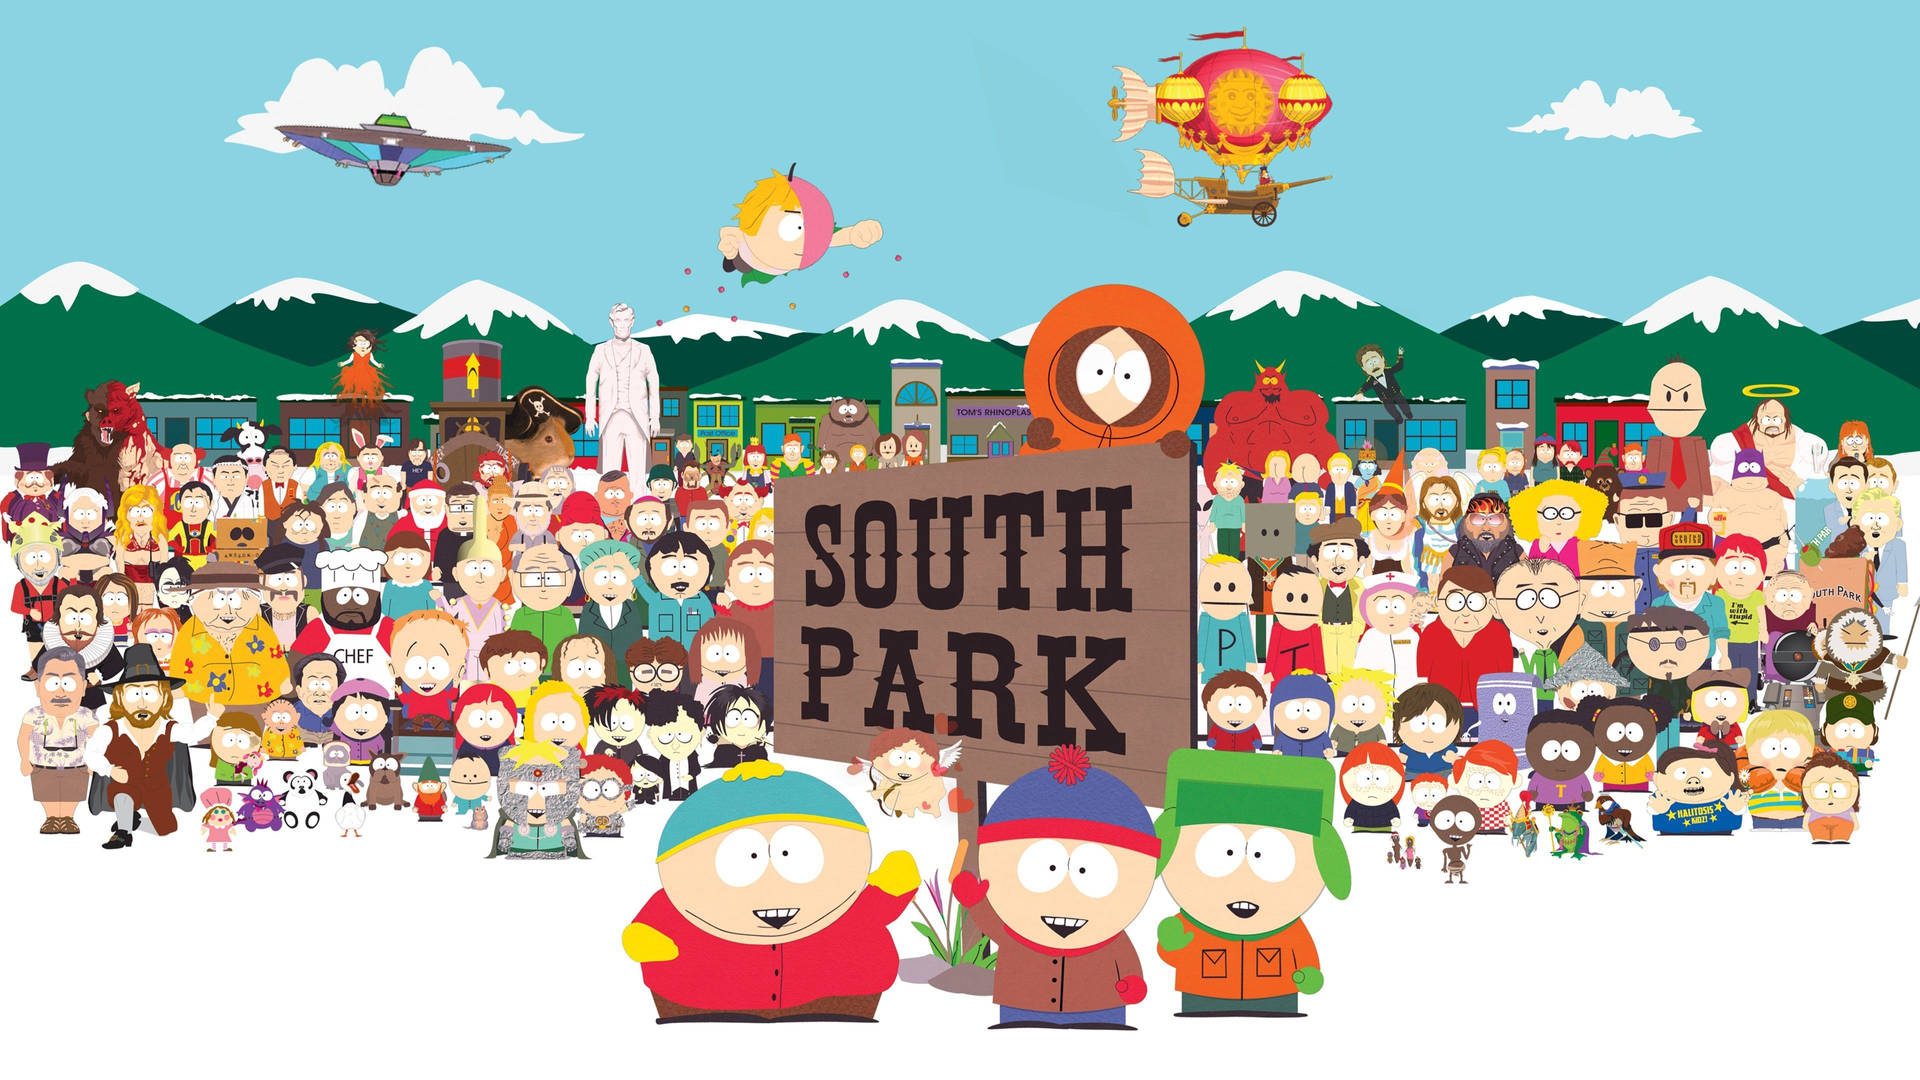 South Park Get Together Wallpaper